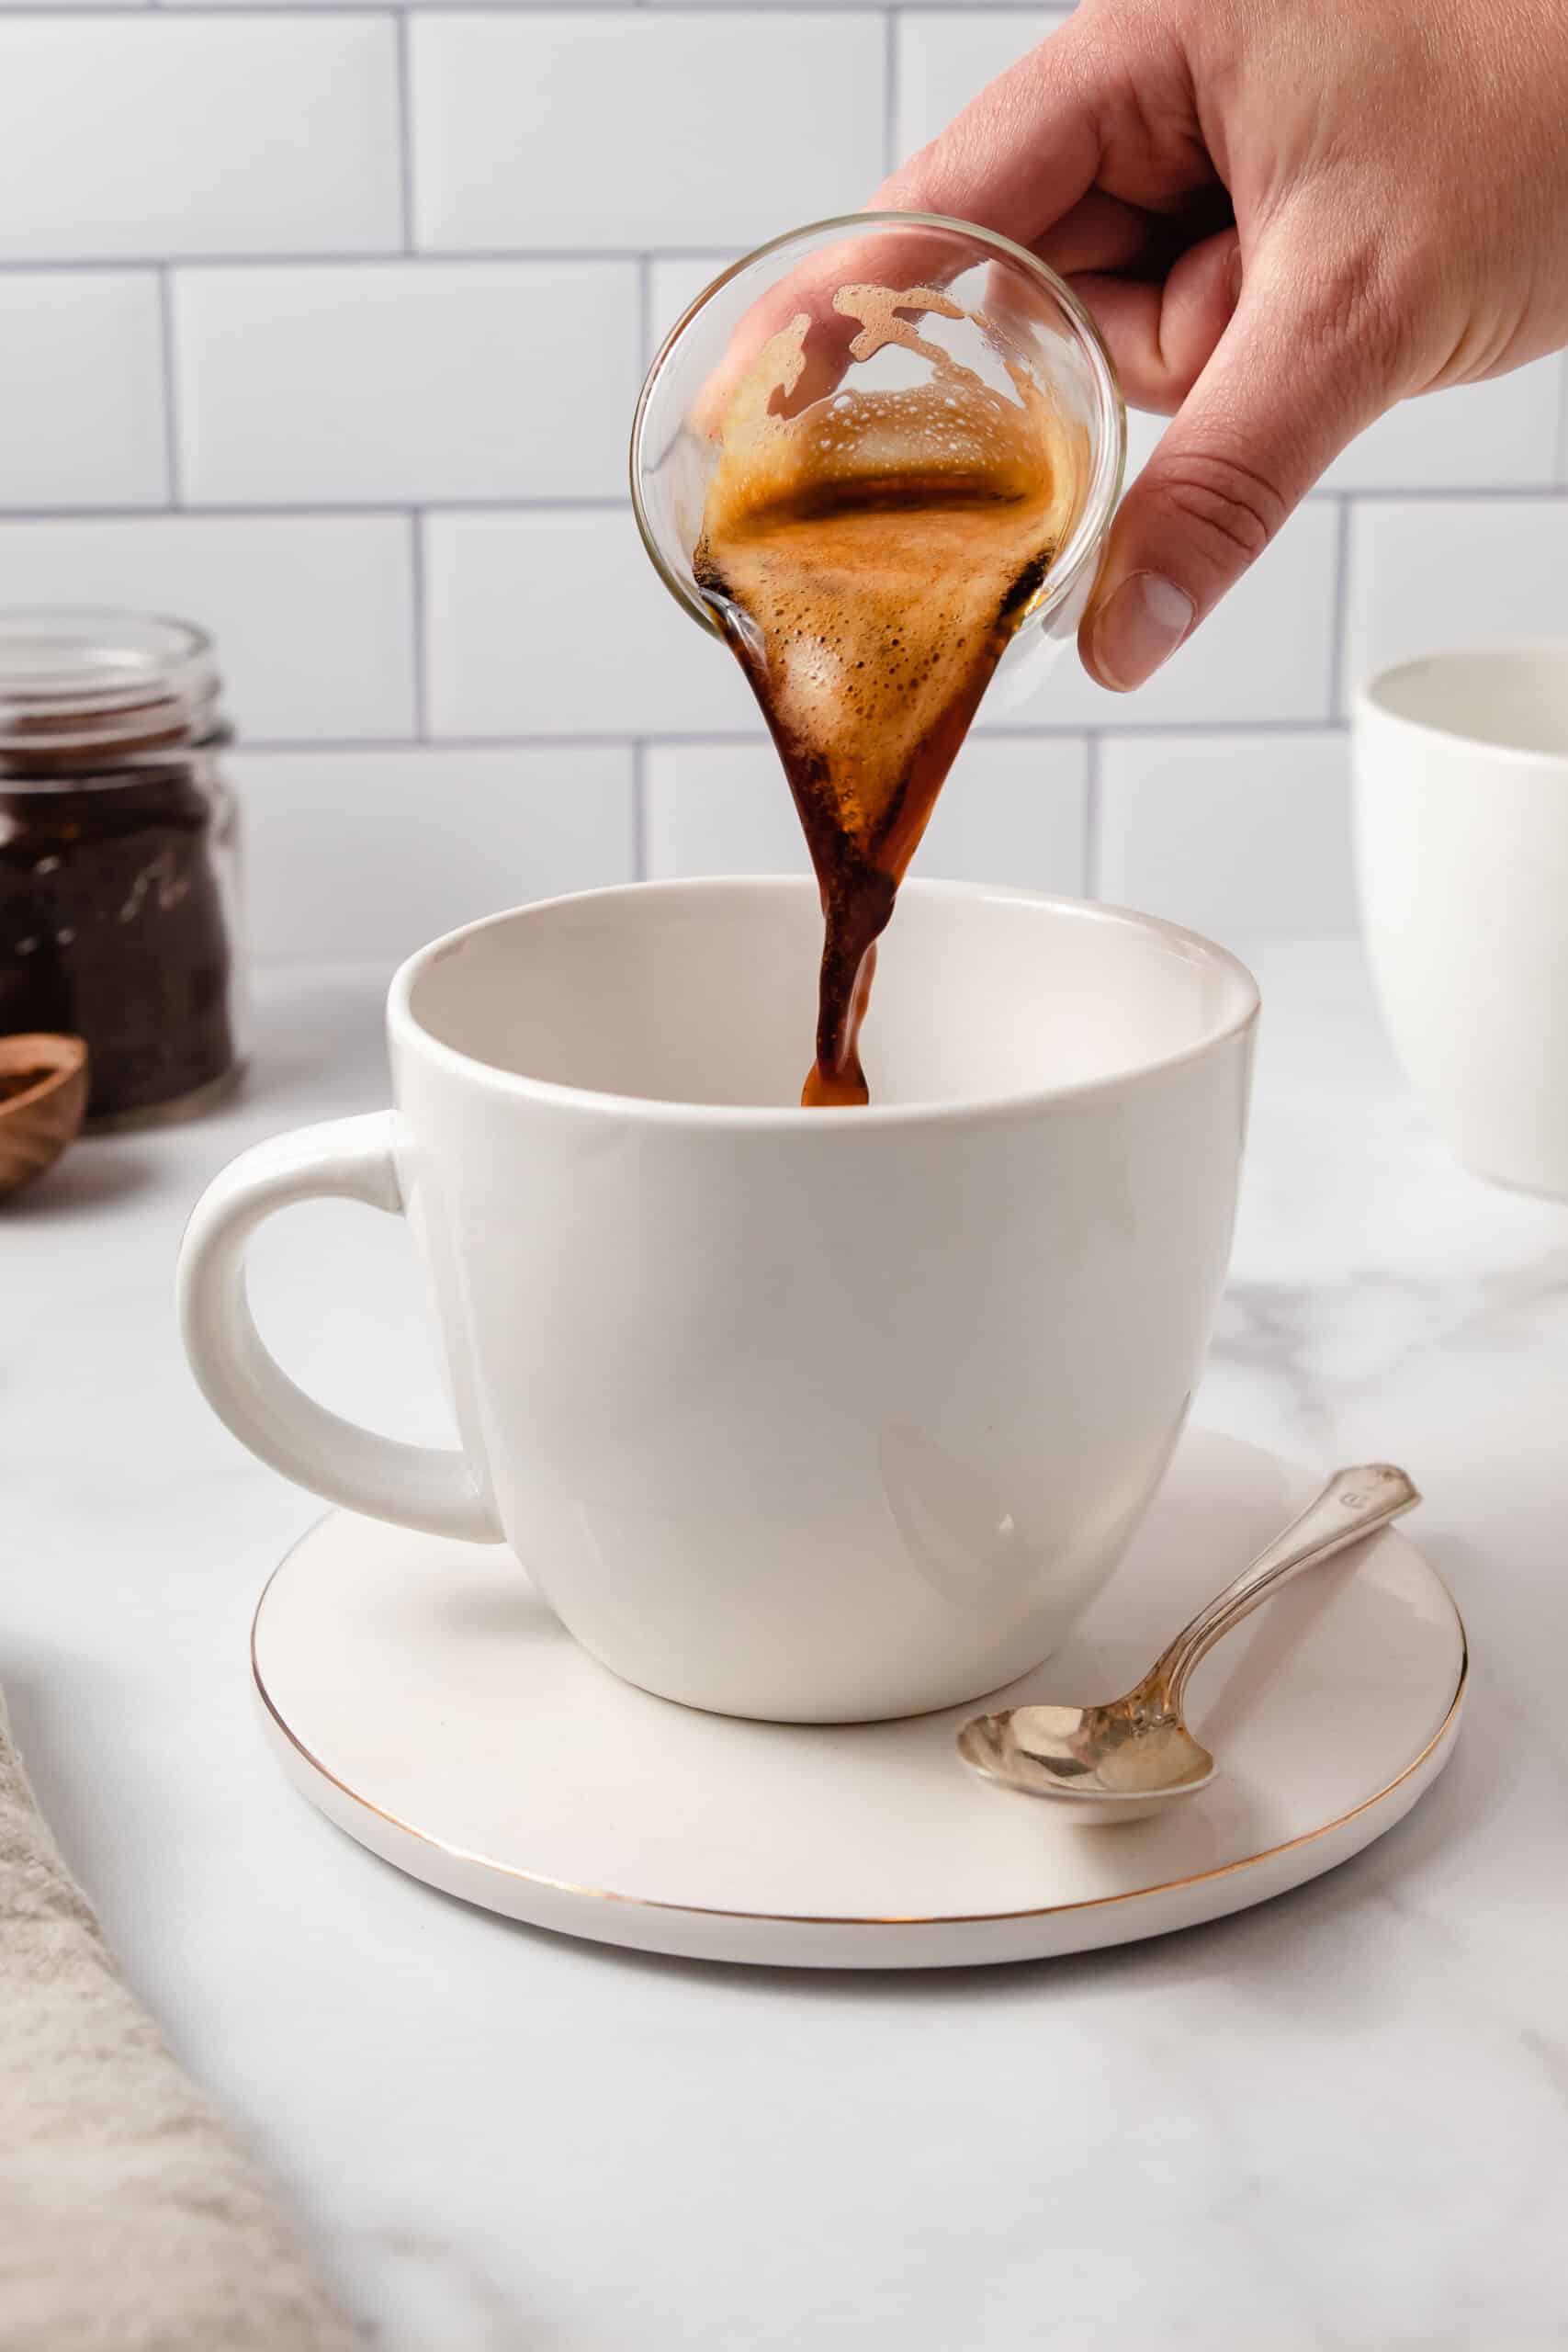 Pouring an espresso shot into a white latte mug.